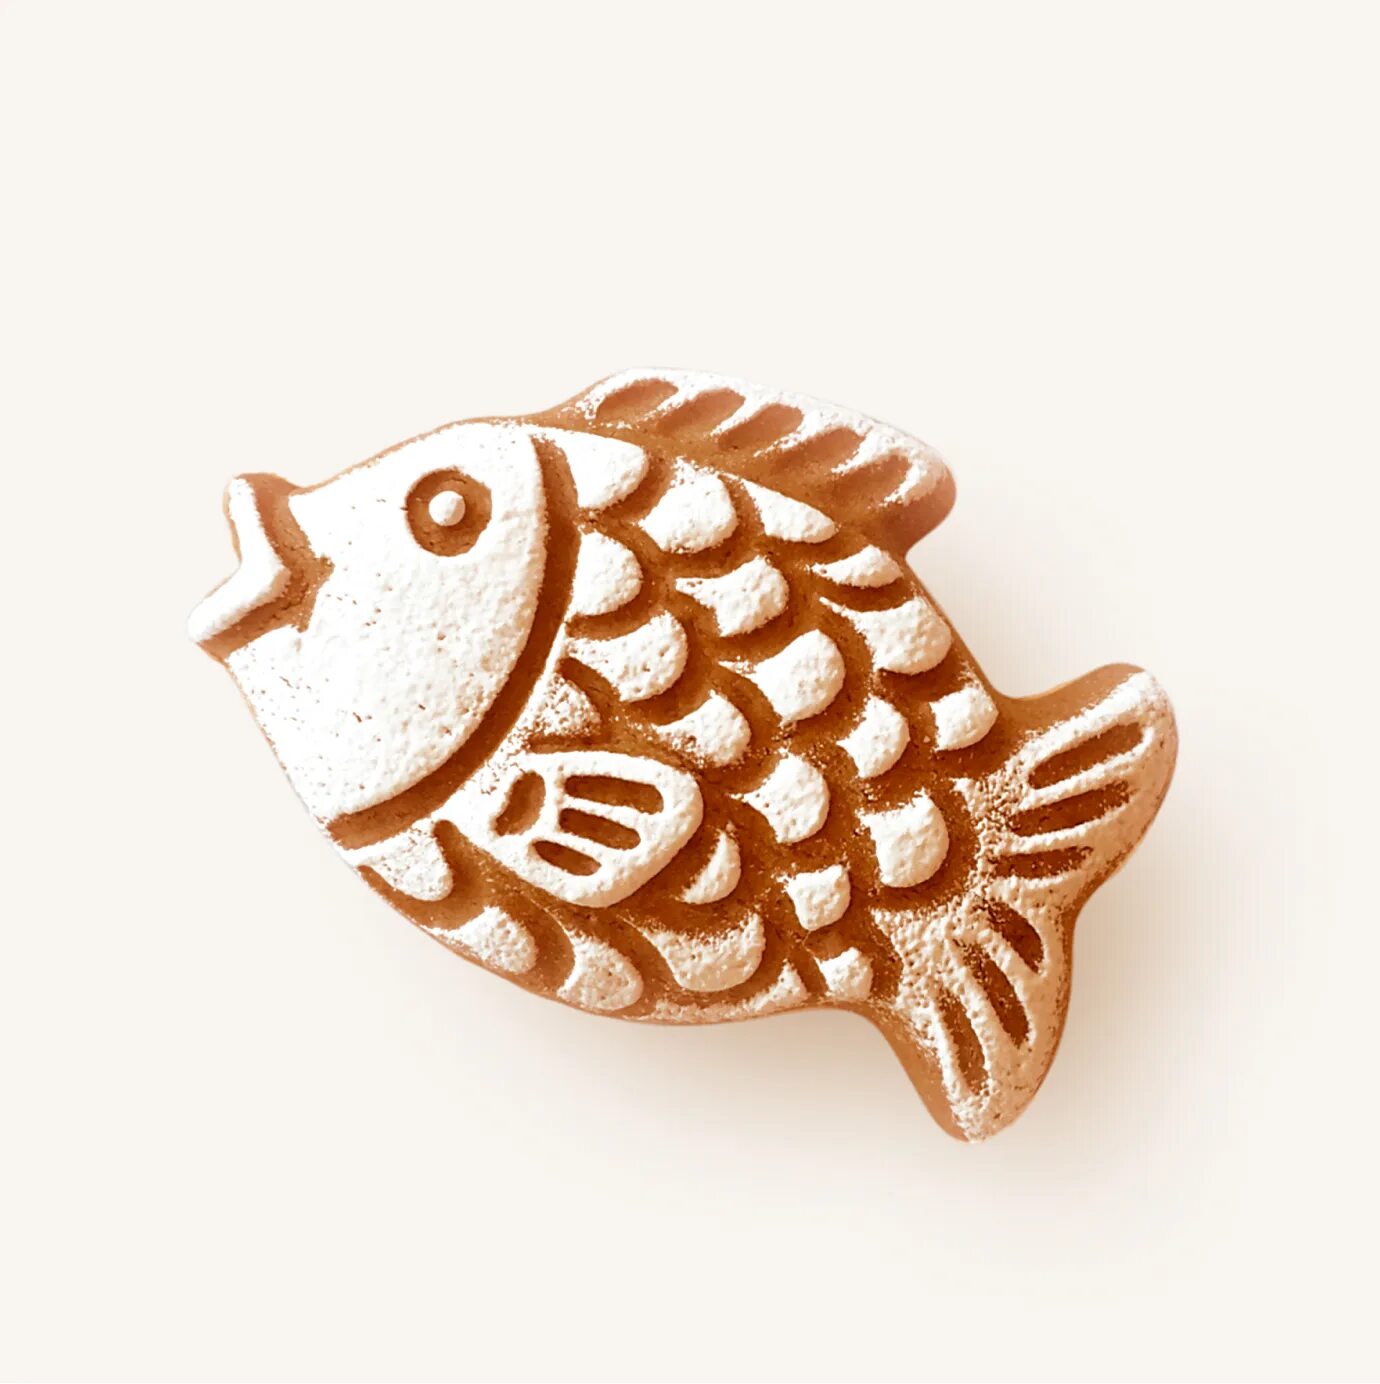 Пряник рыба. Пряничная рыбка. Пряники в форме рыбки. Рыба макет для пряника. Тверской пряник рыбка.